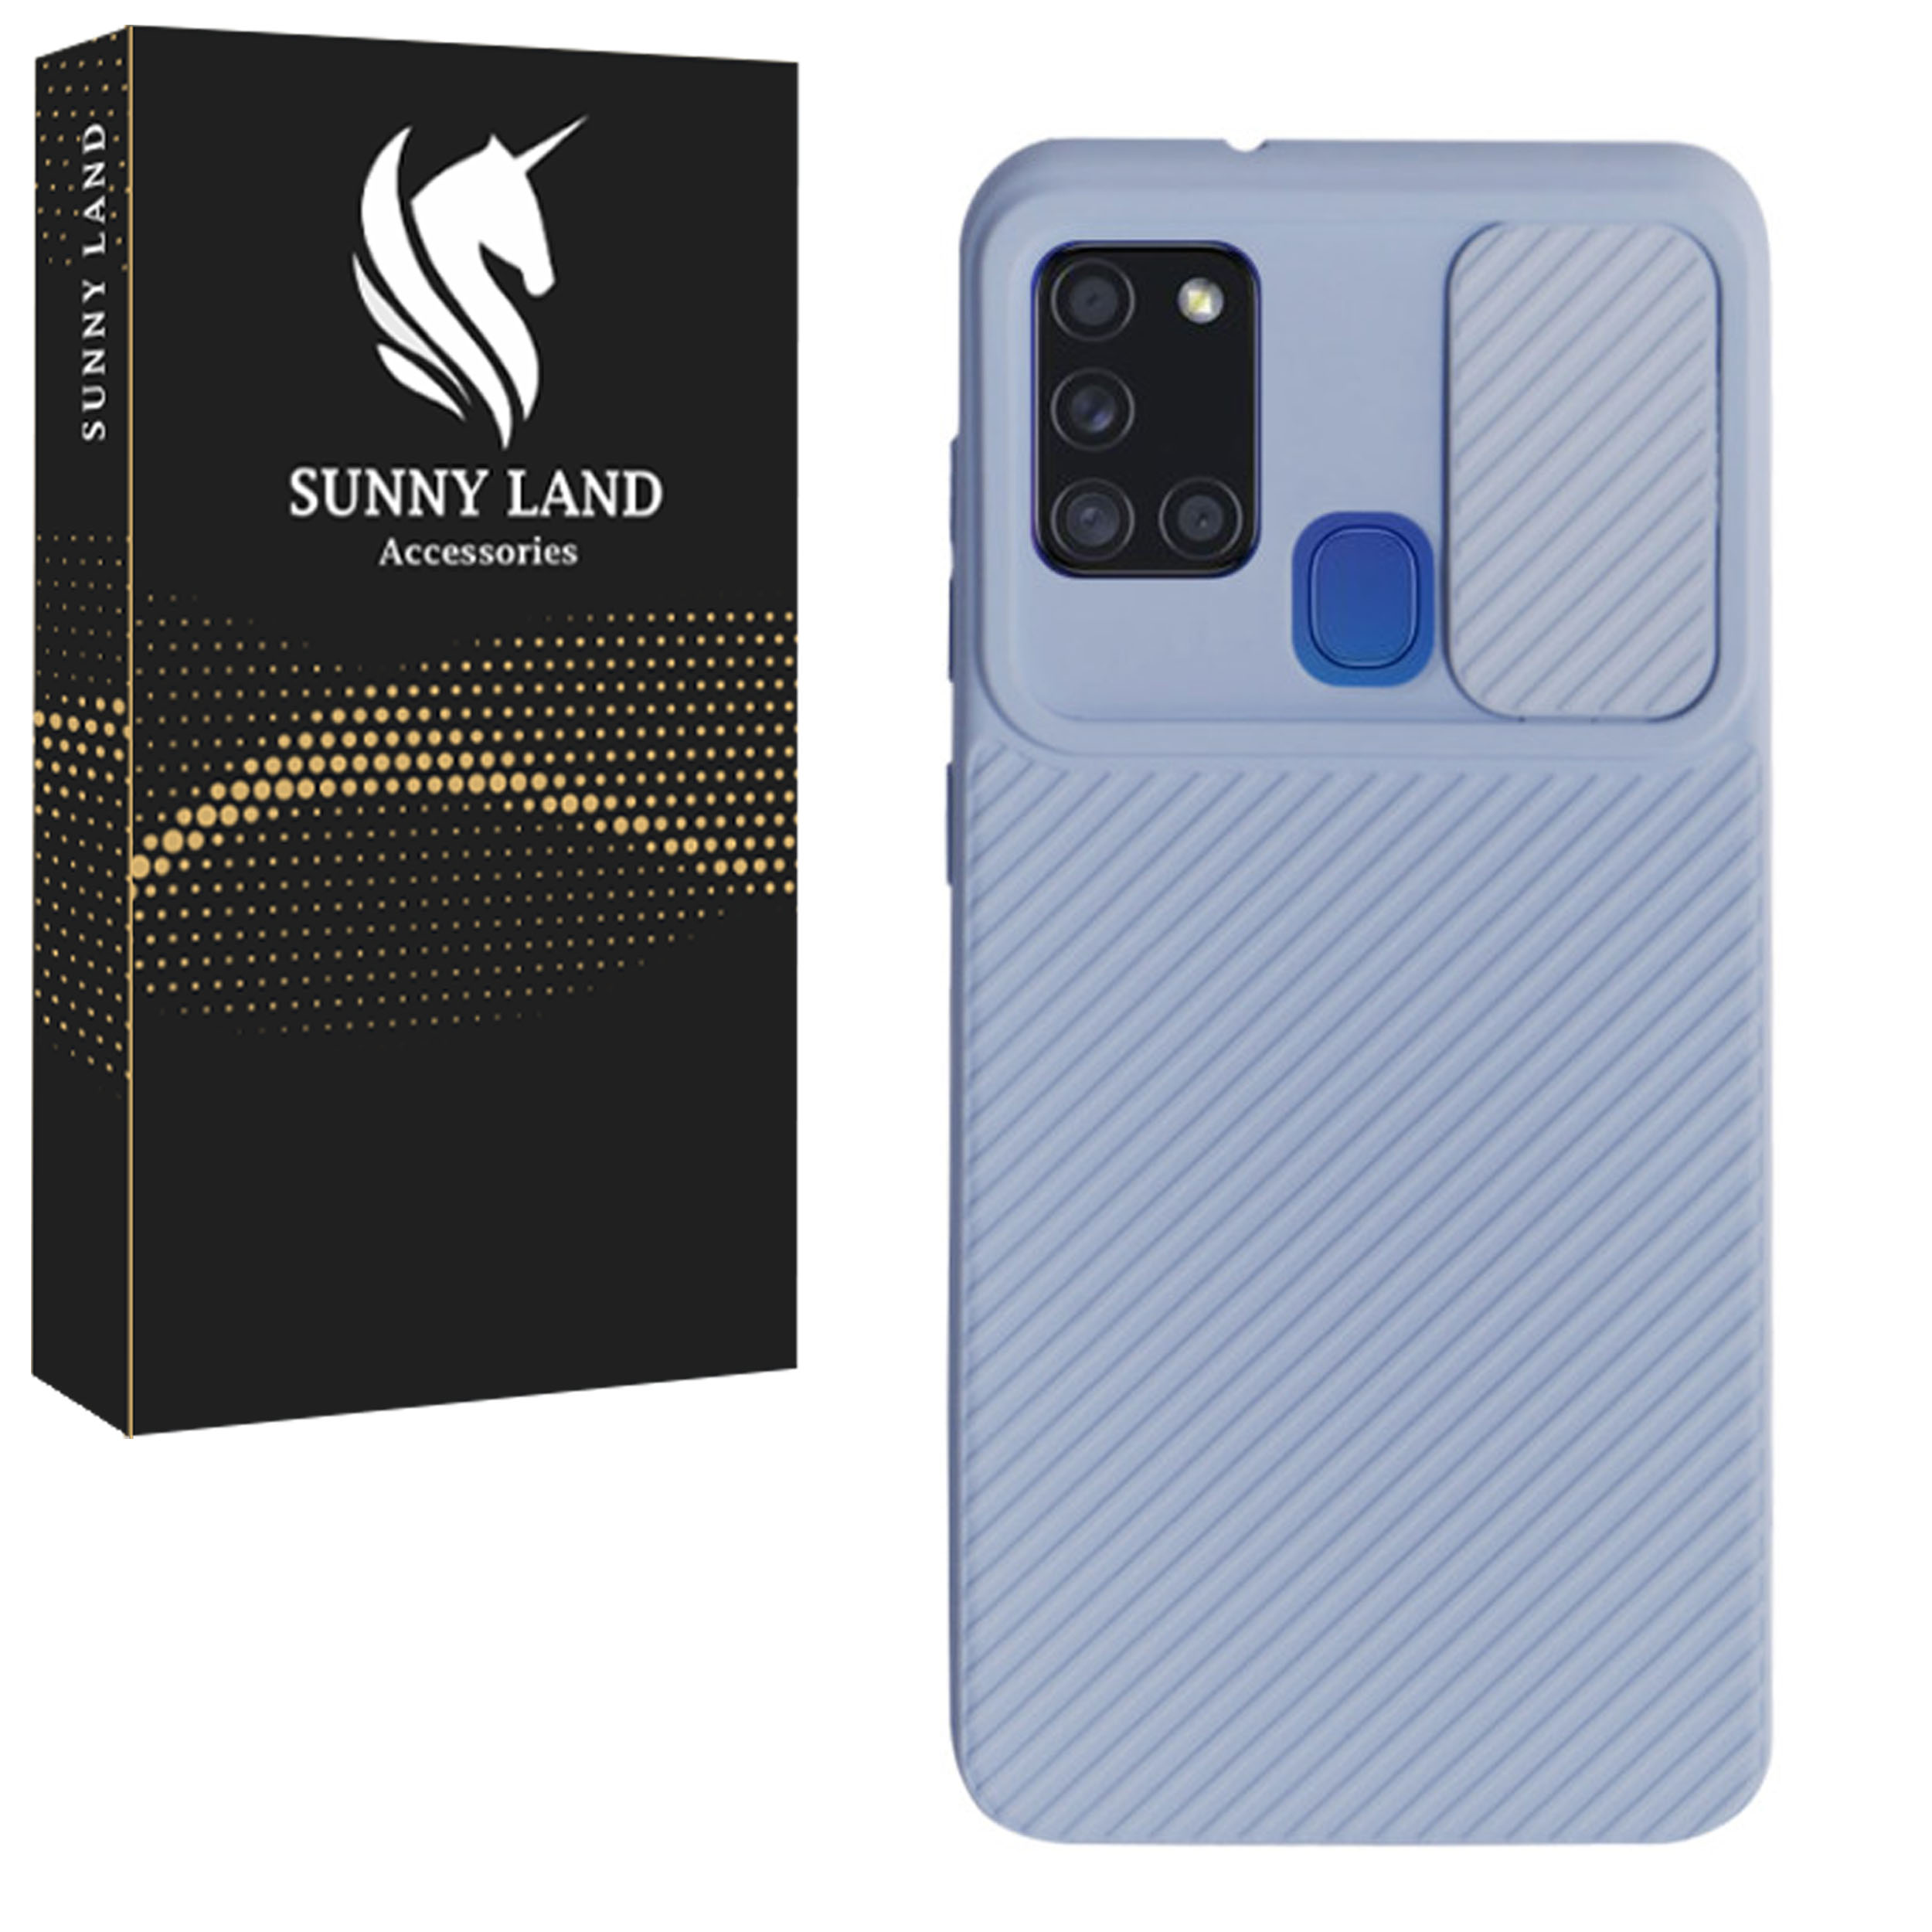 نقد و بررسی کاور سانی لند مدل Slnk01 مناسب برای گوشی موبایل سامسونگ Galaxy A21s توسط خریداران